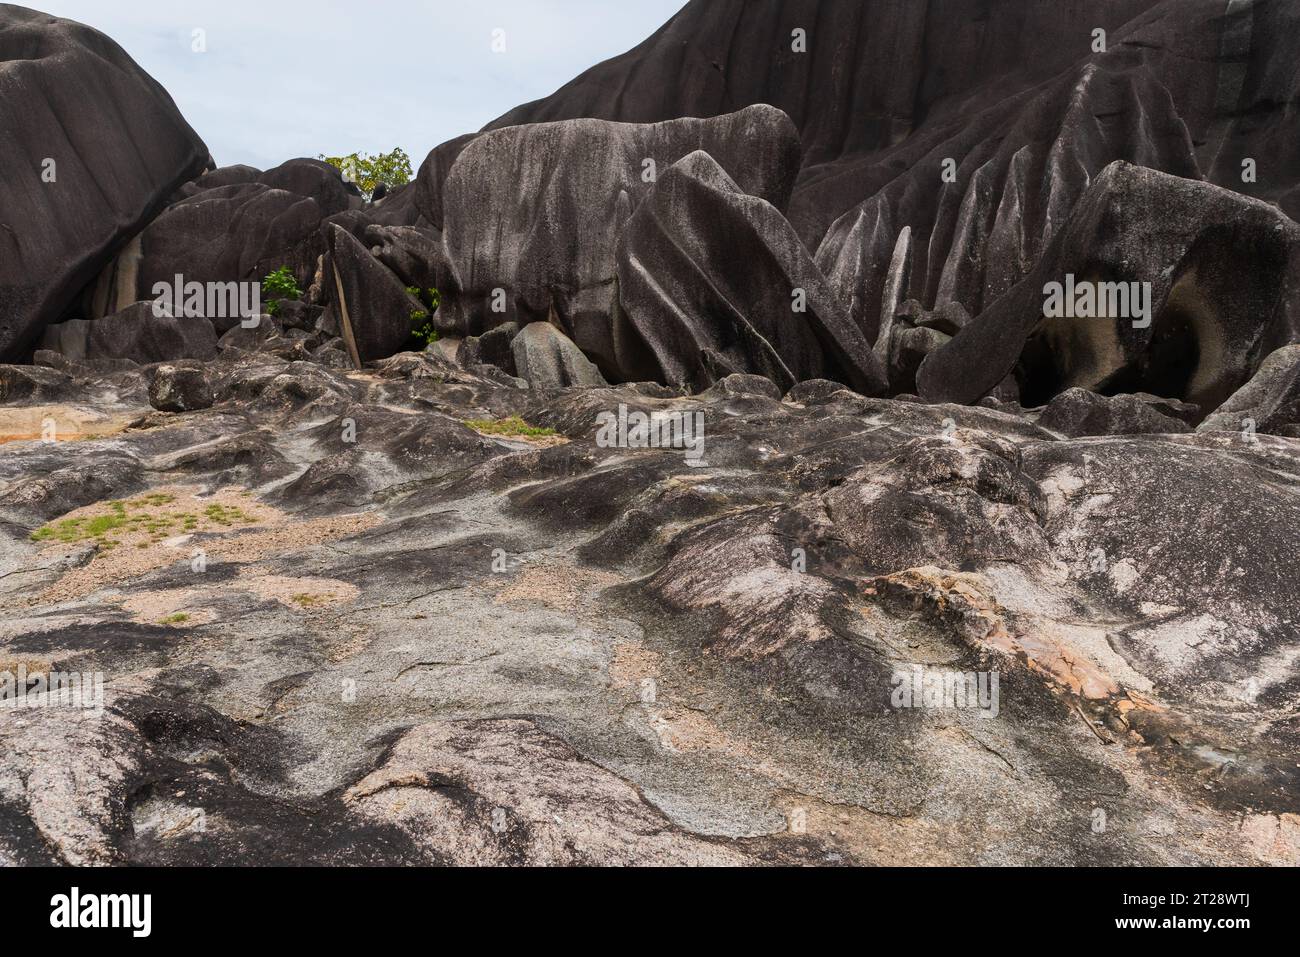 Paysage vide avec le monolithe noir du Giant Union Rock. Monument naturel de l'île de la Digue, Seychelles Banque D'Images